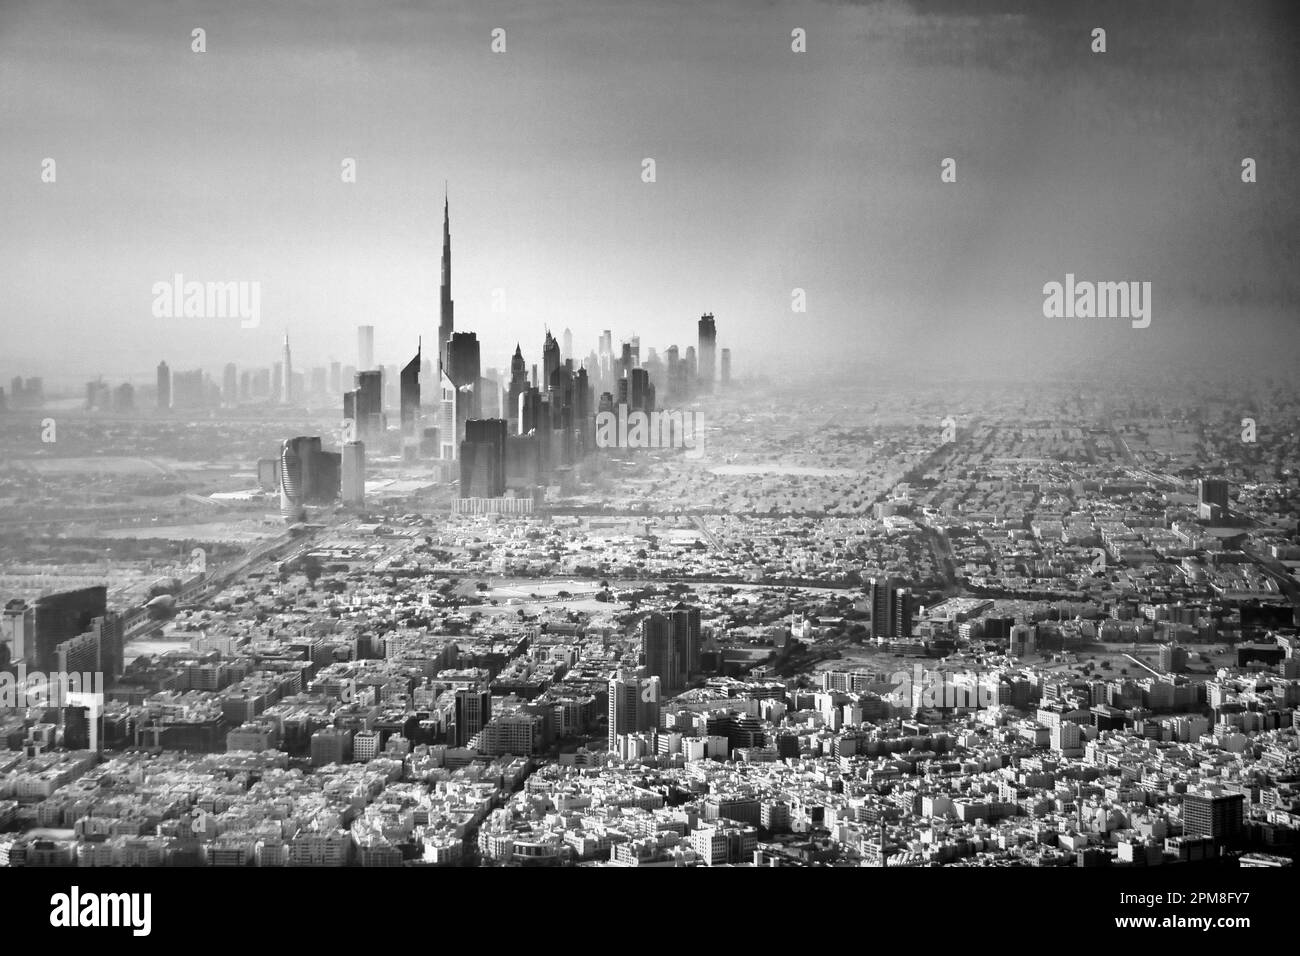 Emirats Arabes Unis, Dubai, Centre. Arrière-plan centre financier et Burj Khalifa, le plus haut bâtiment du monde. Antenne. Image noir et blanc. Banque D'Images